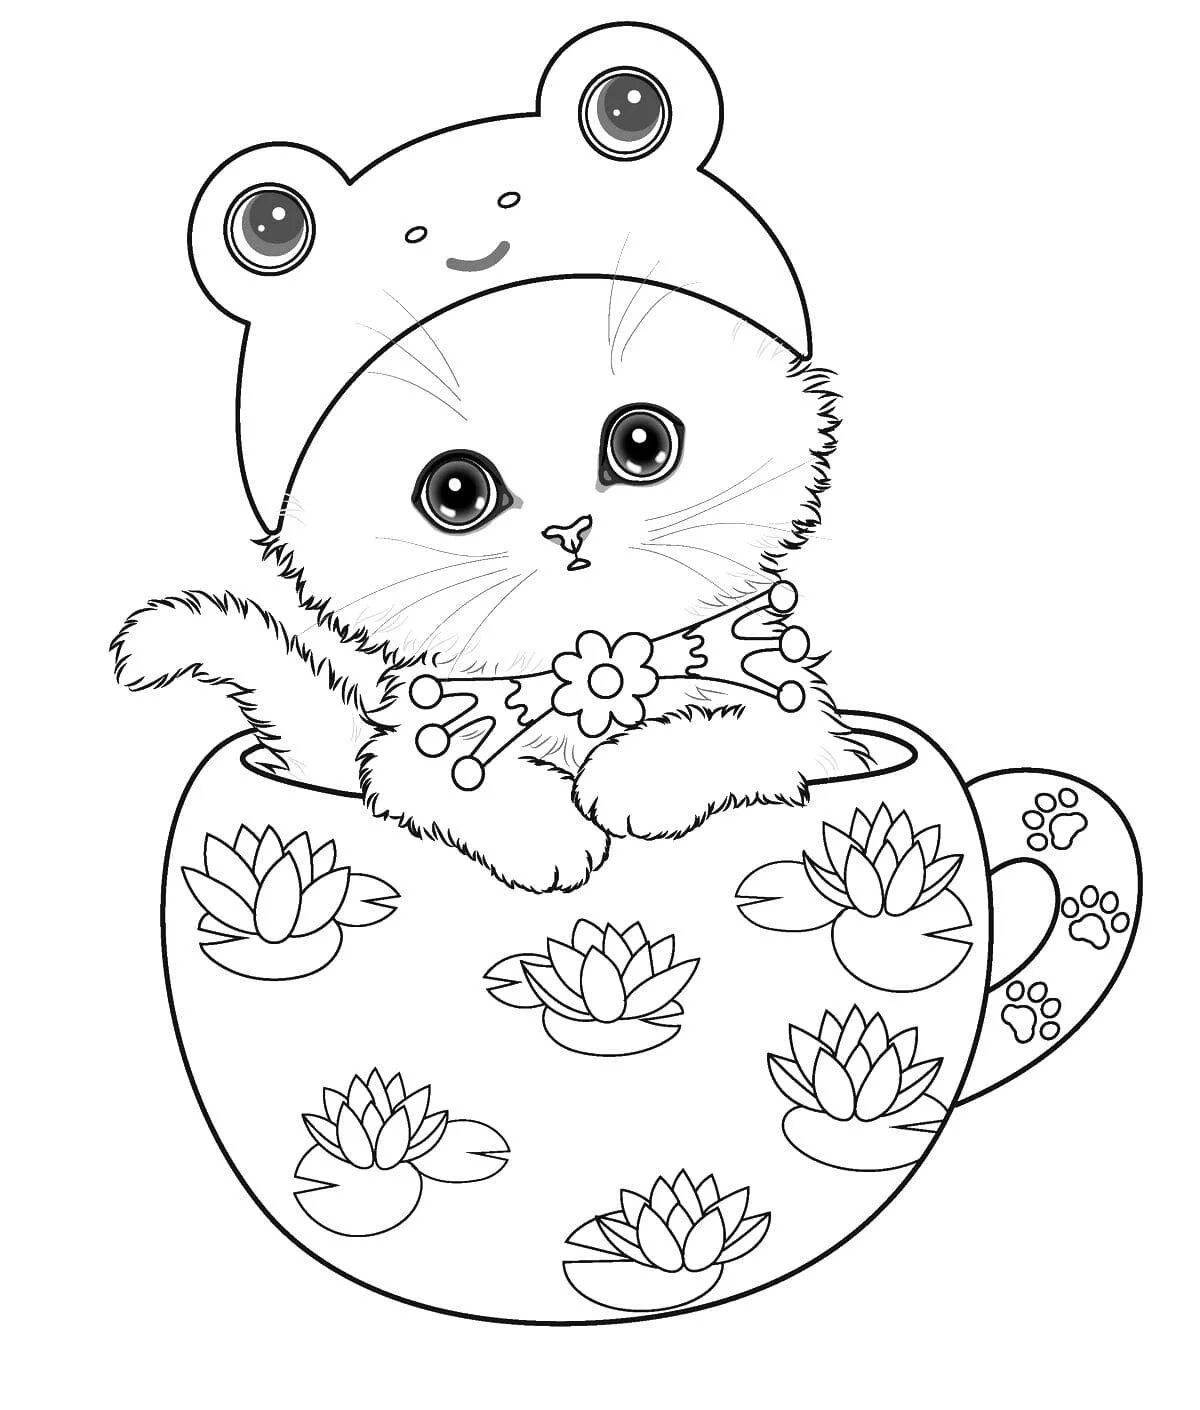 Snuggable раскраски милые кошки для девочек